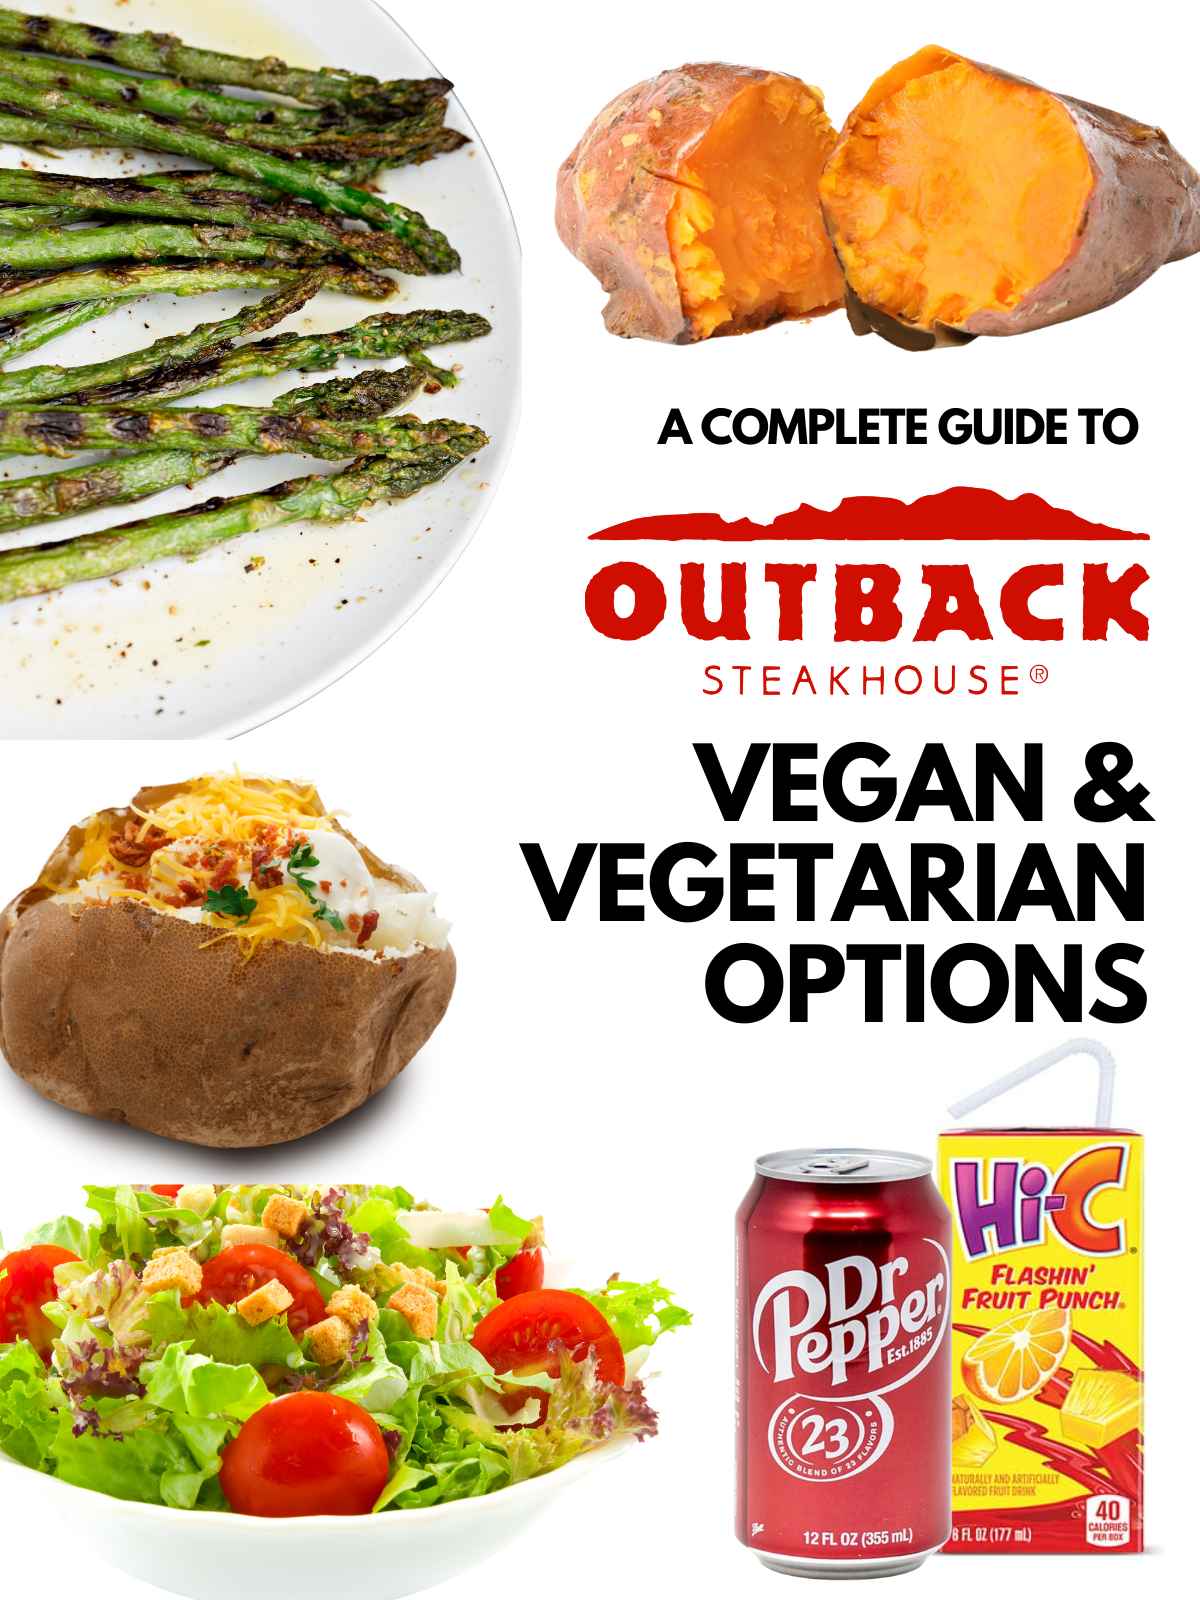 Sonic Vegan Options & Menu Guide {Vegetarian + Dairy-Free}